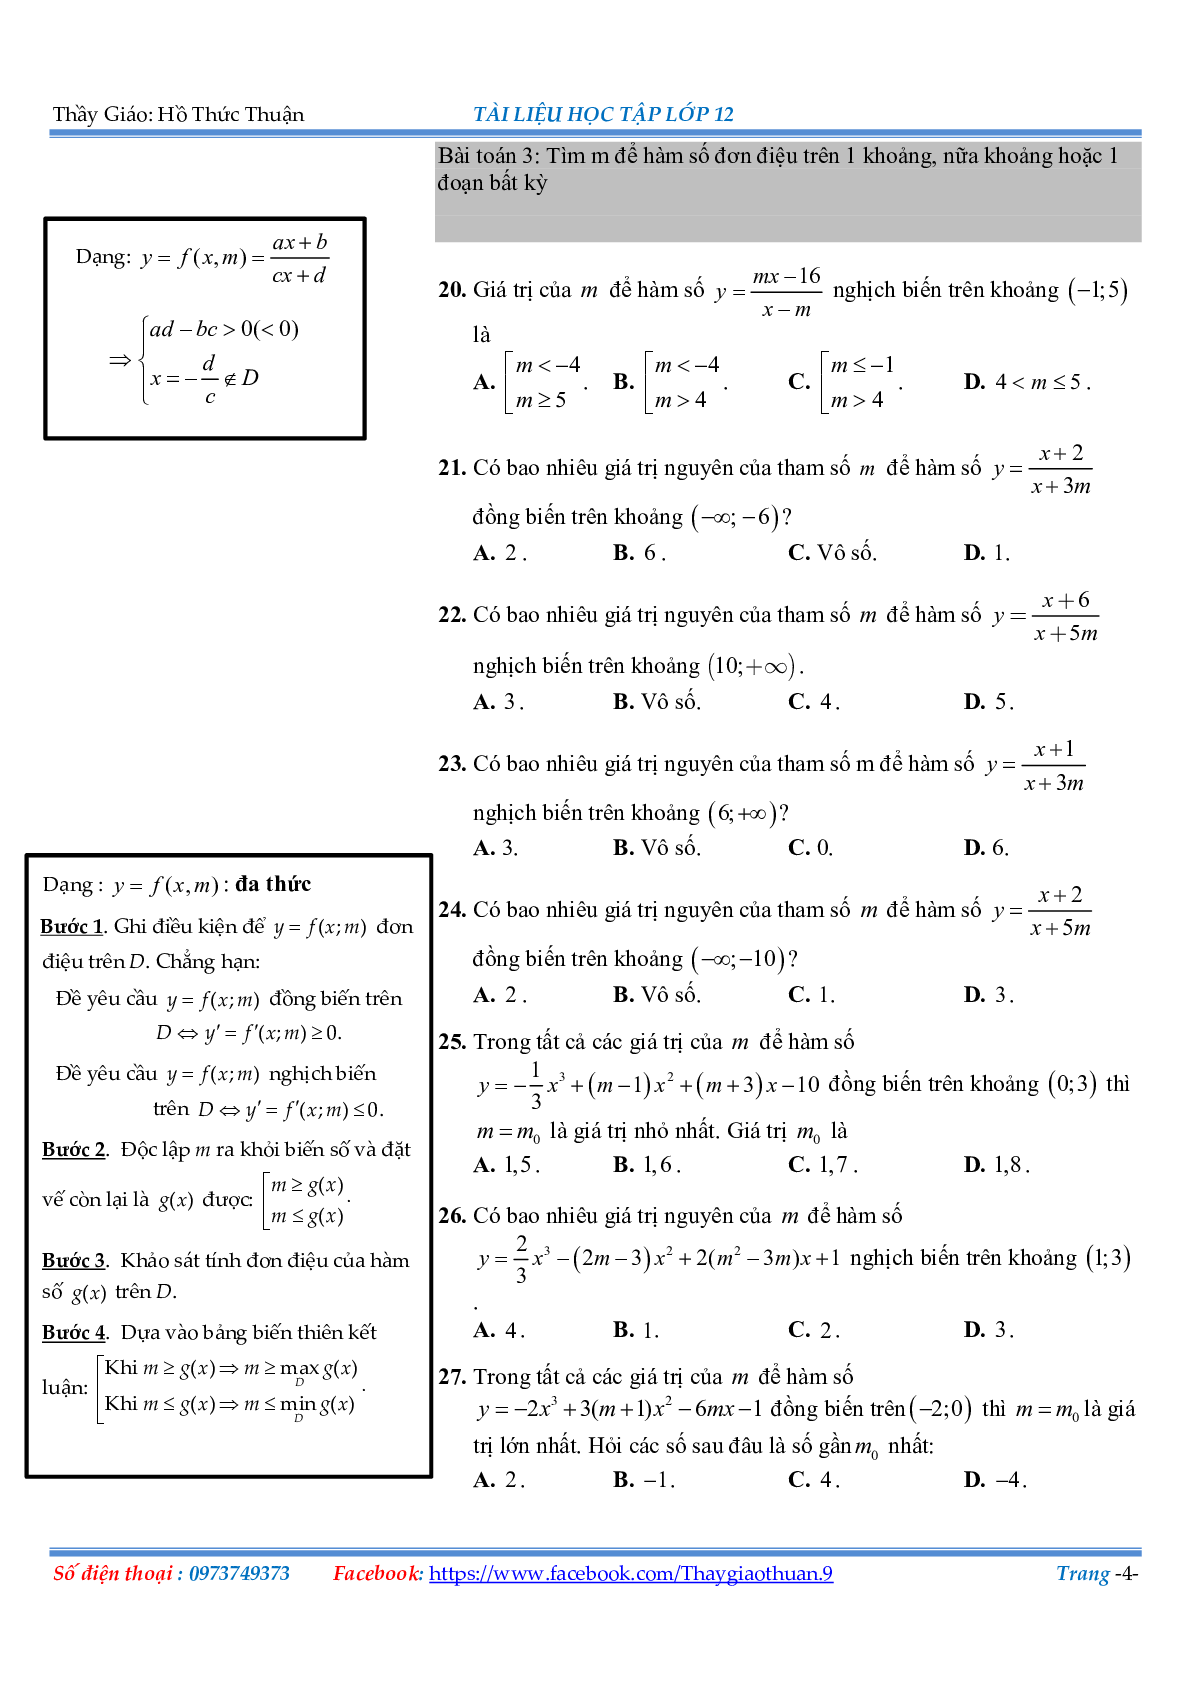 Bài tập về các cách giải đơn điệu Hàm số (trang 4)